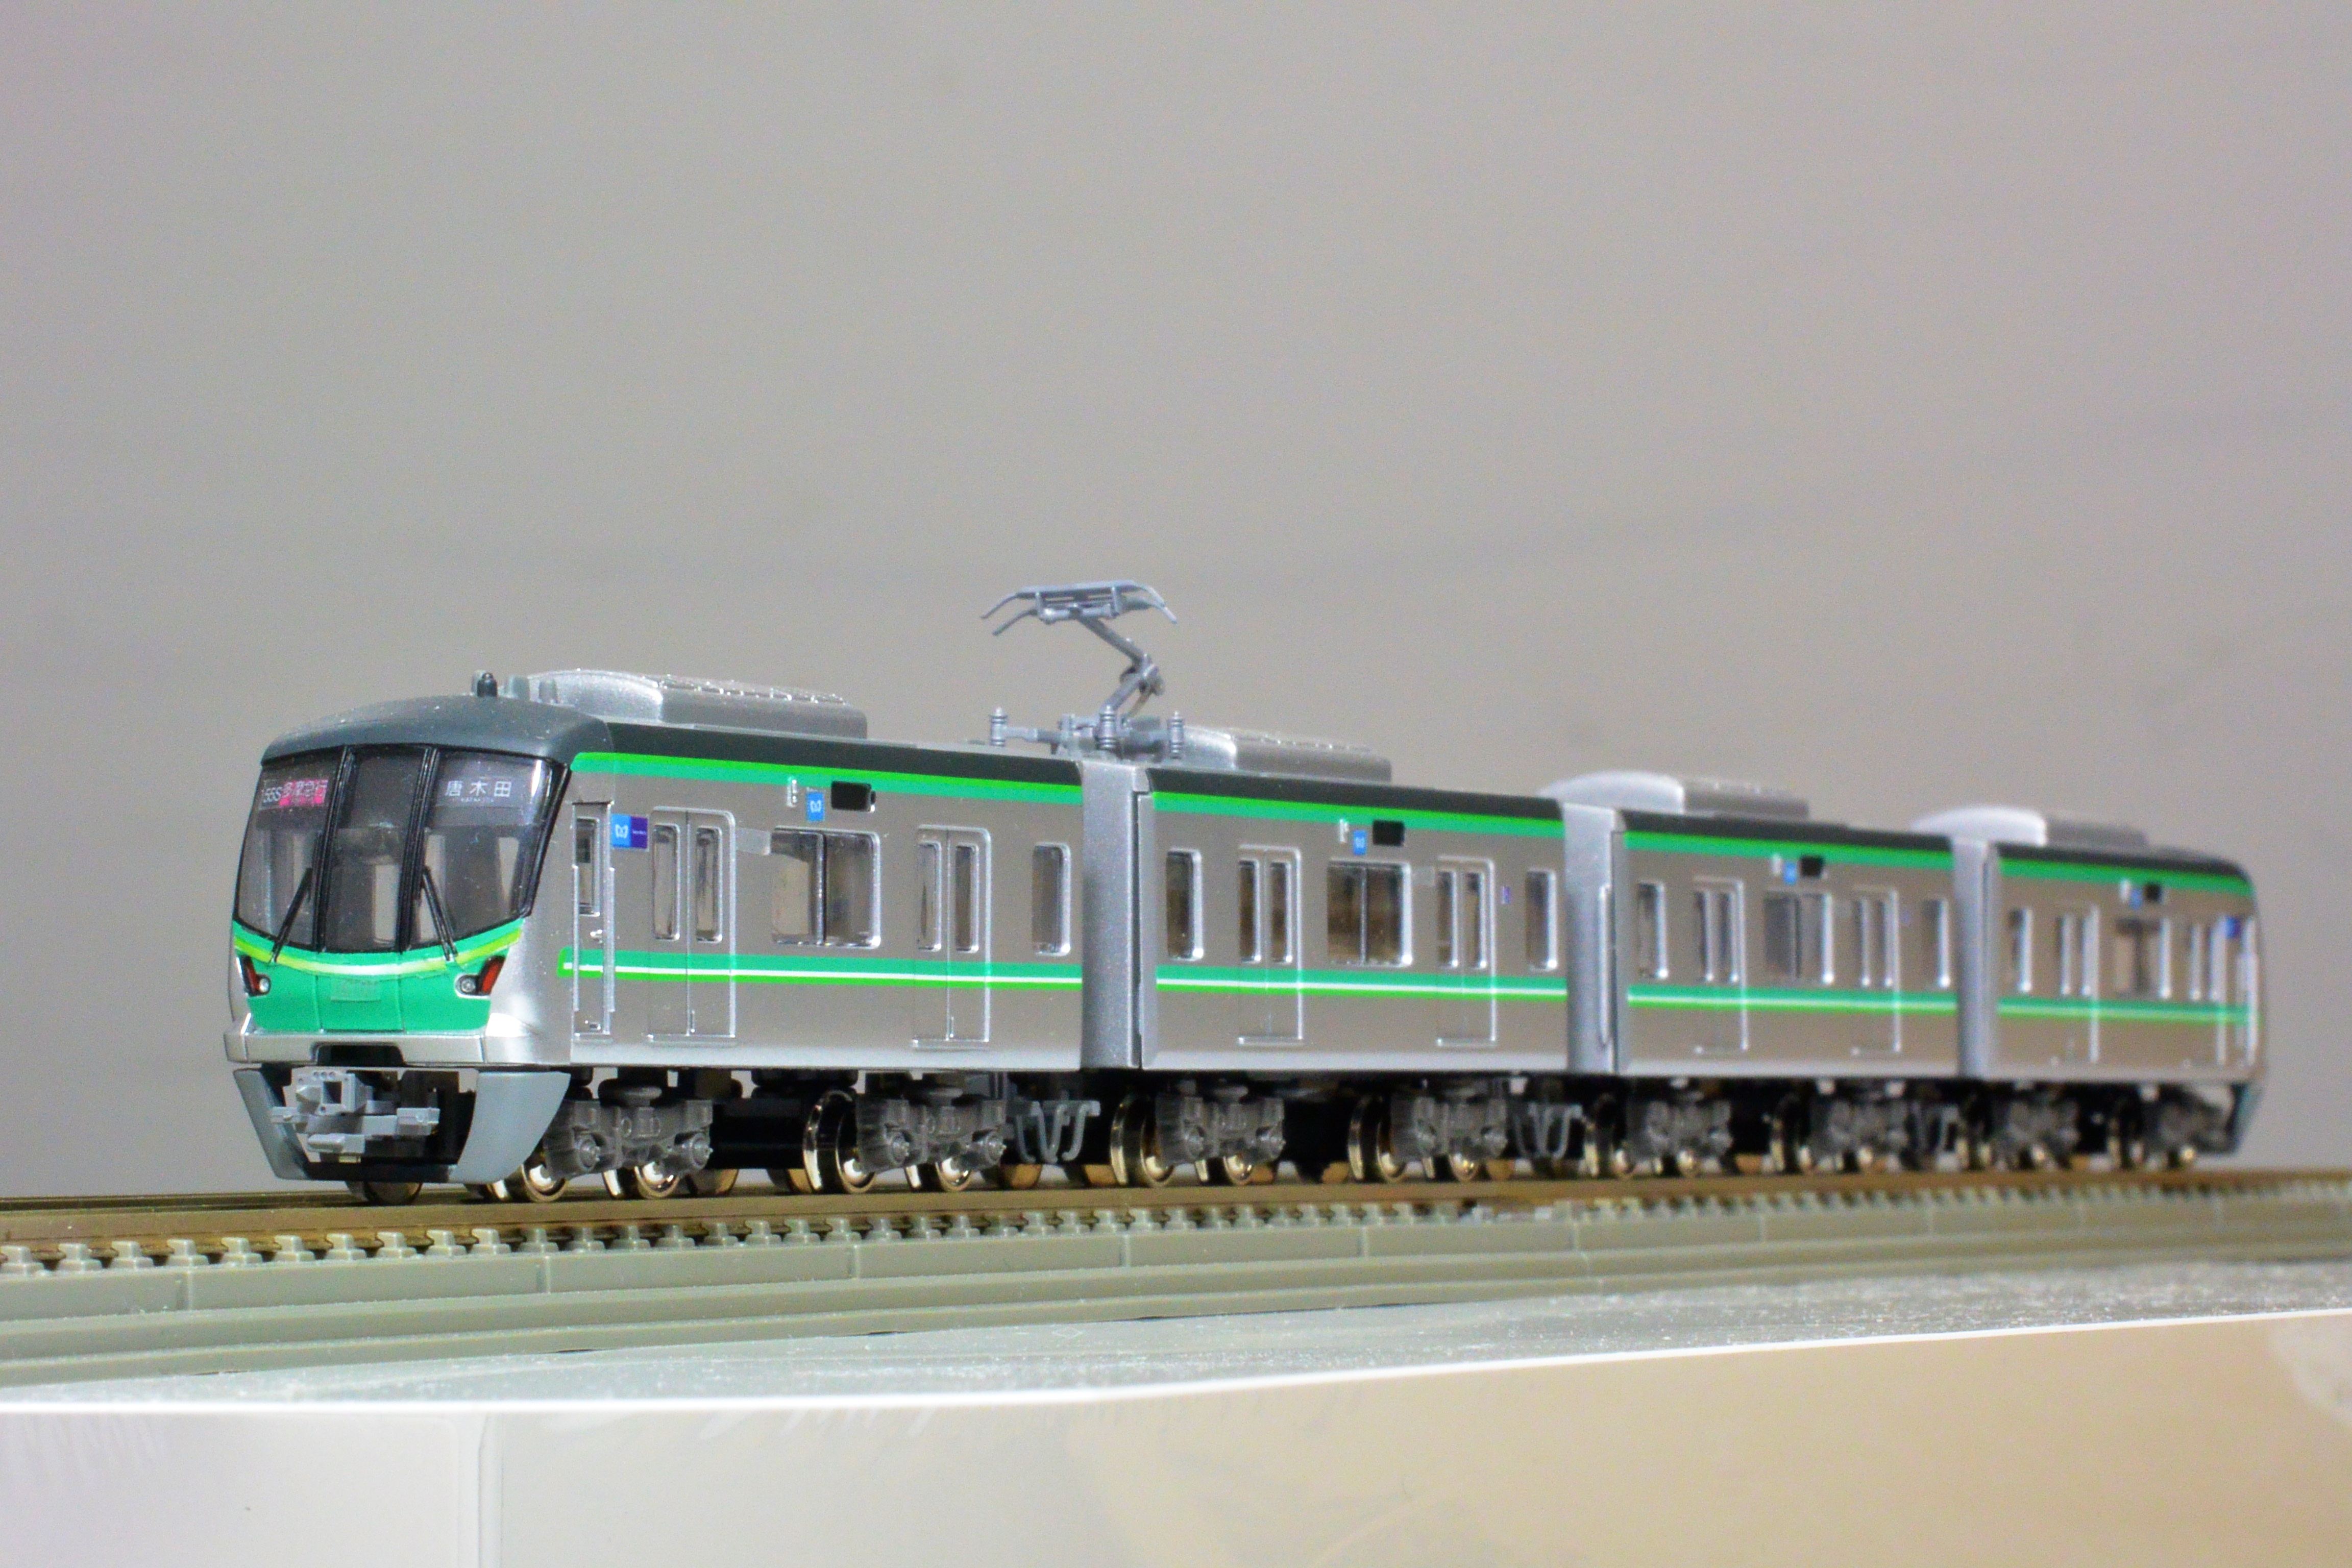 東京メトロ 千代田線 16000系 2・3次車 Bトレインショーティー-